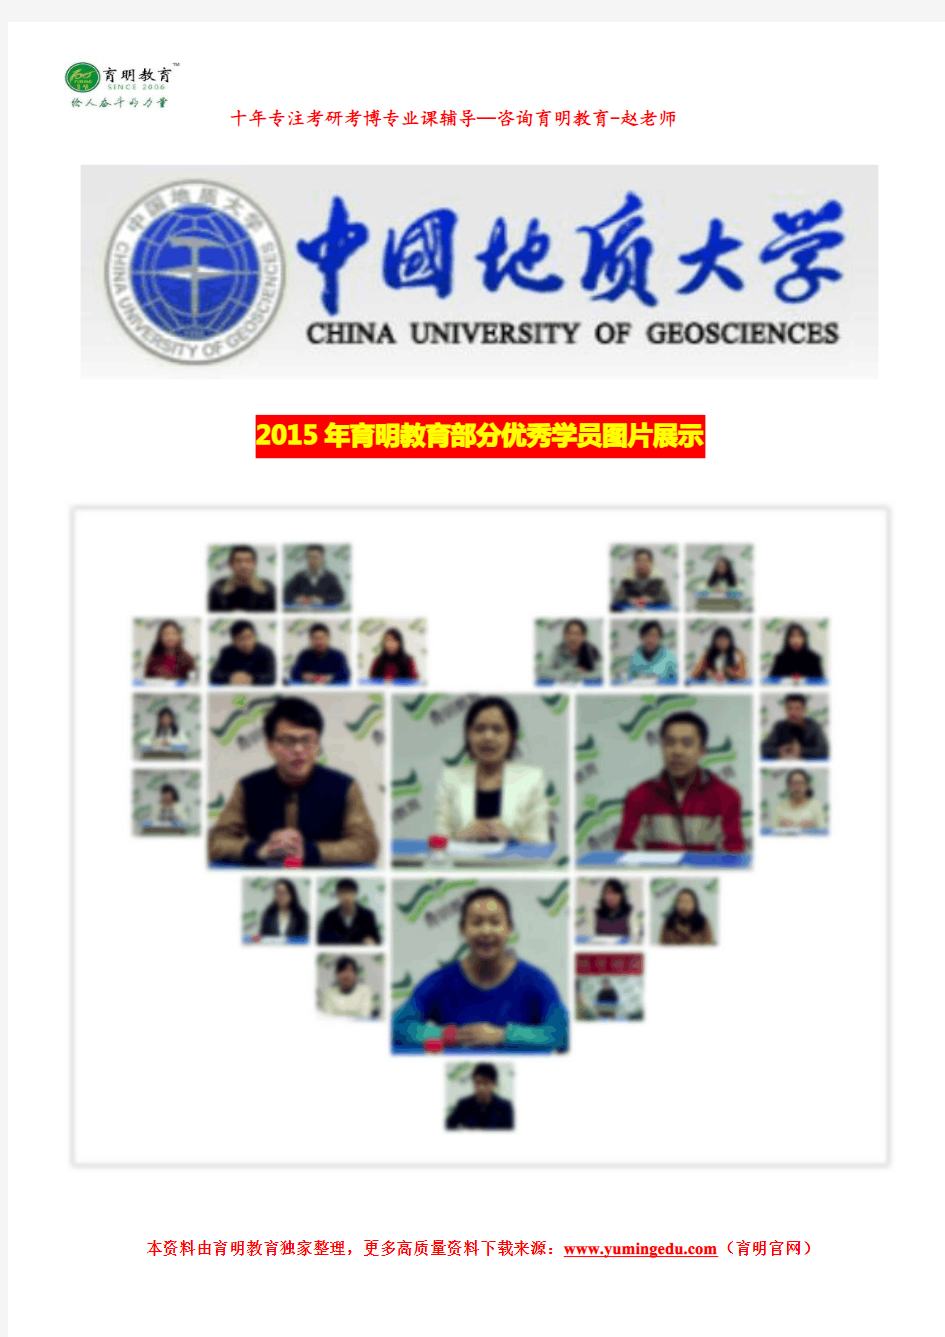 2017年中国地质大学(北京)公共管理考研参考书、招生情况、录取人数、报录比、考试科目、考研真题及其解析